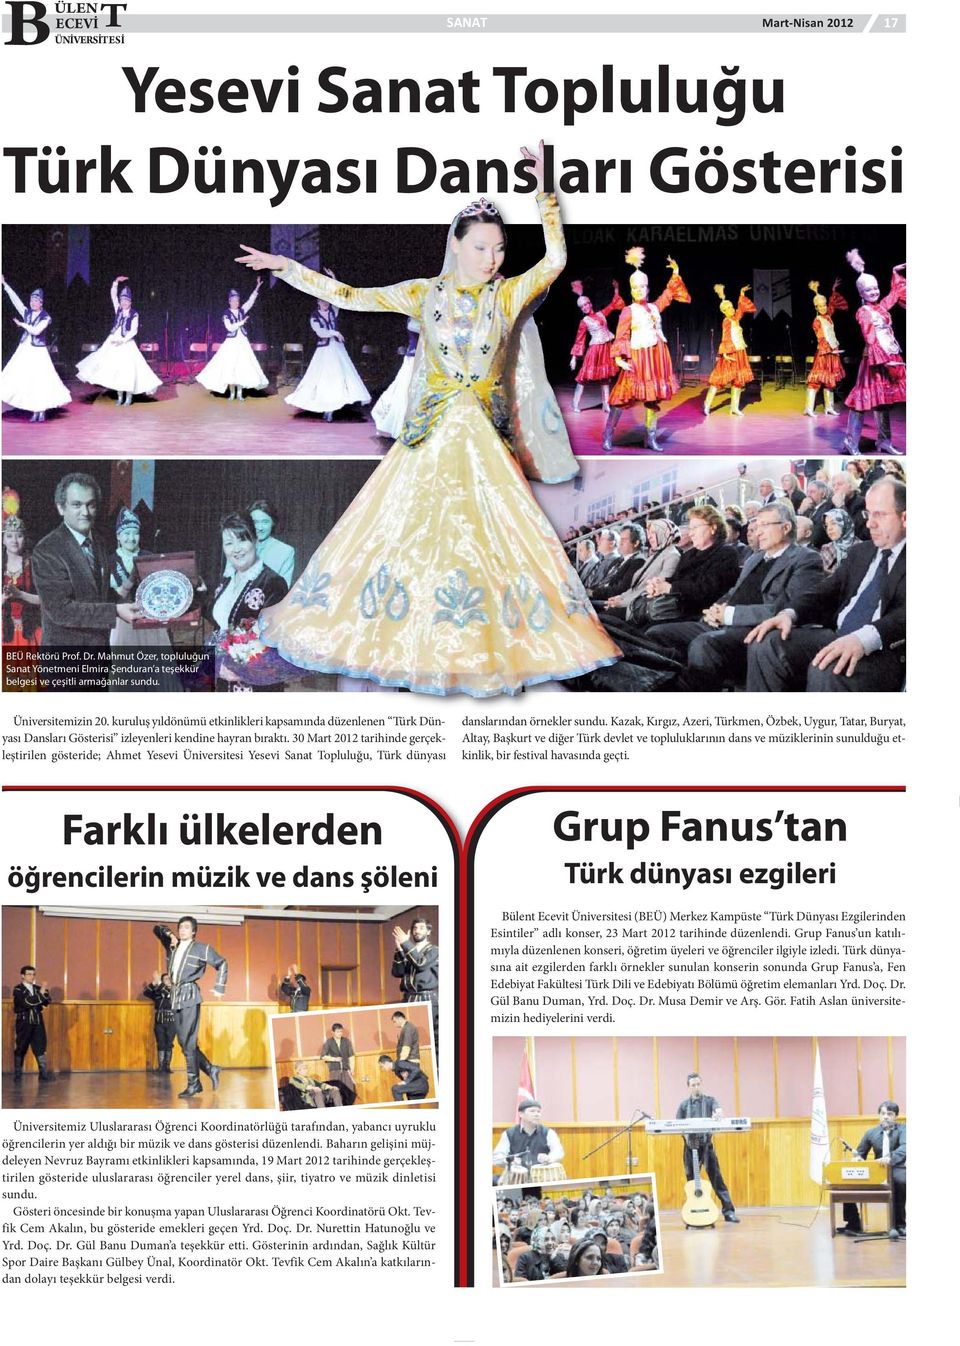 kuruluş yıldönümü etkinlikleri kapsamında düzenlenen Türk Dünyası Dansları Gösterisi izleyenleri kendine hayran bıraktı.